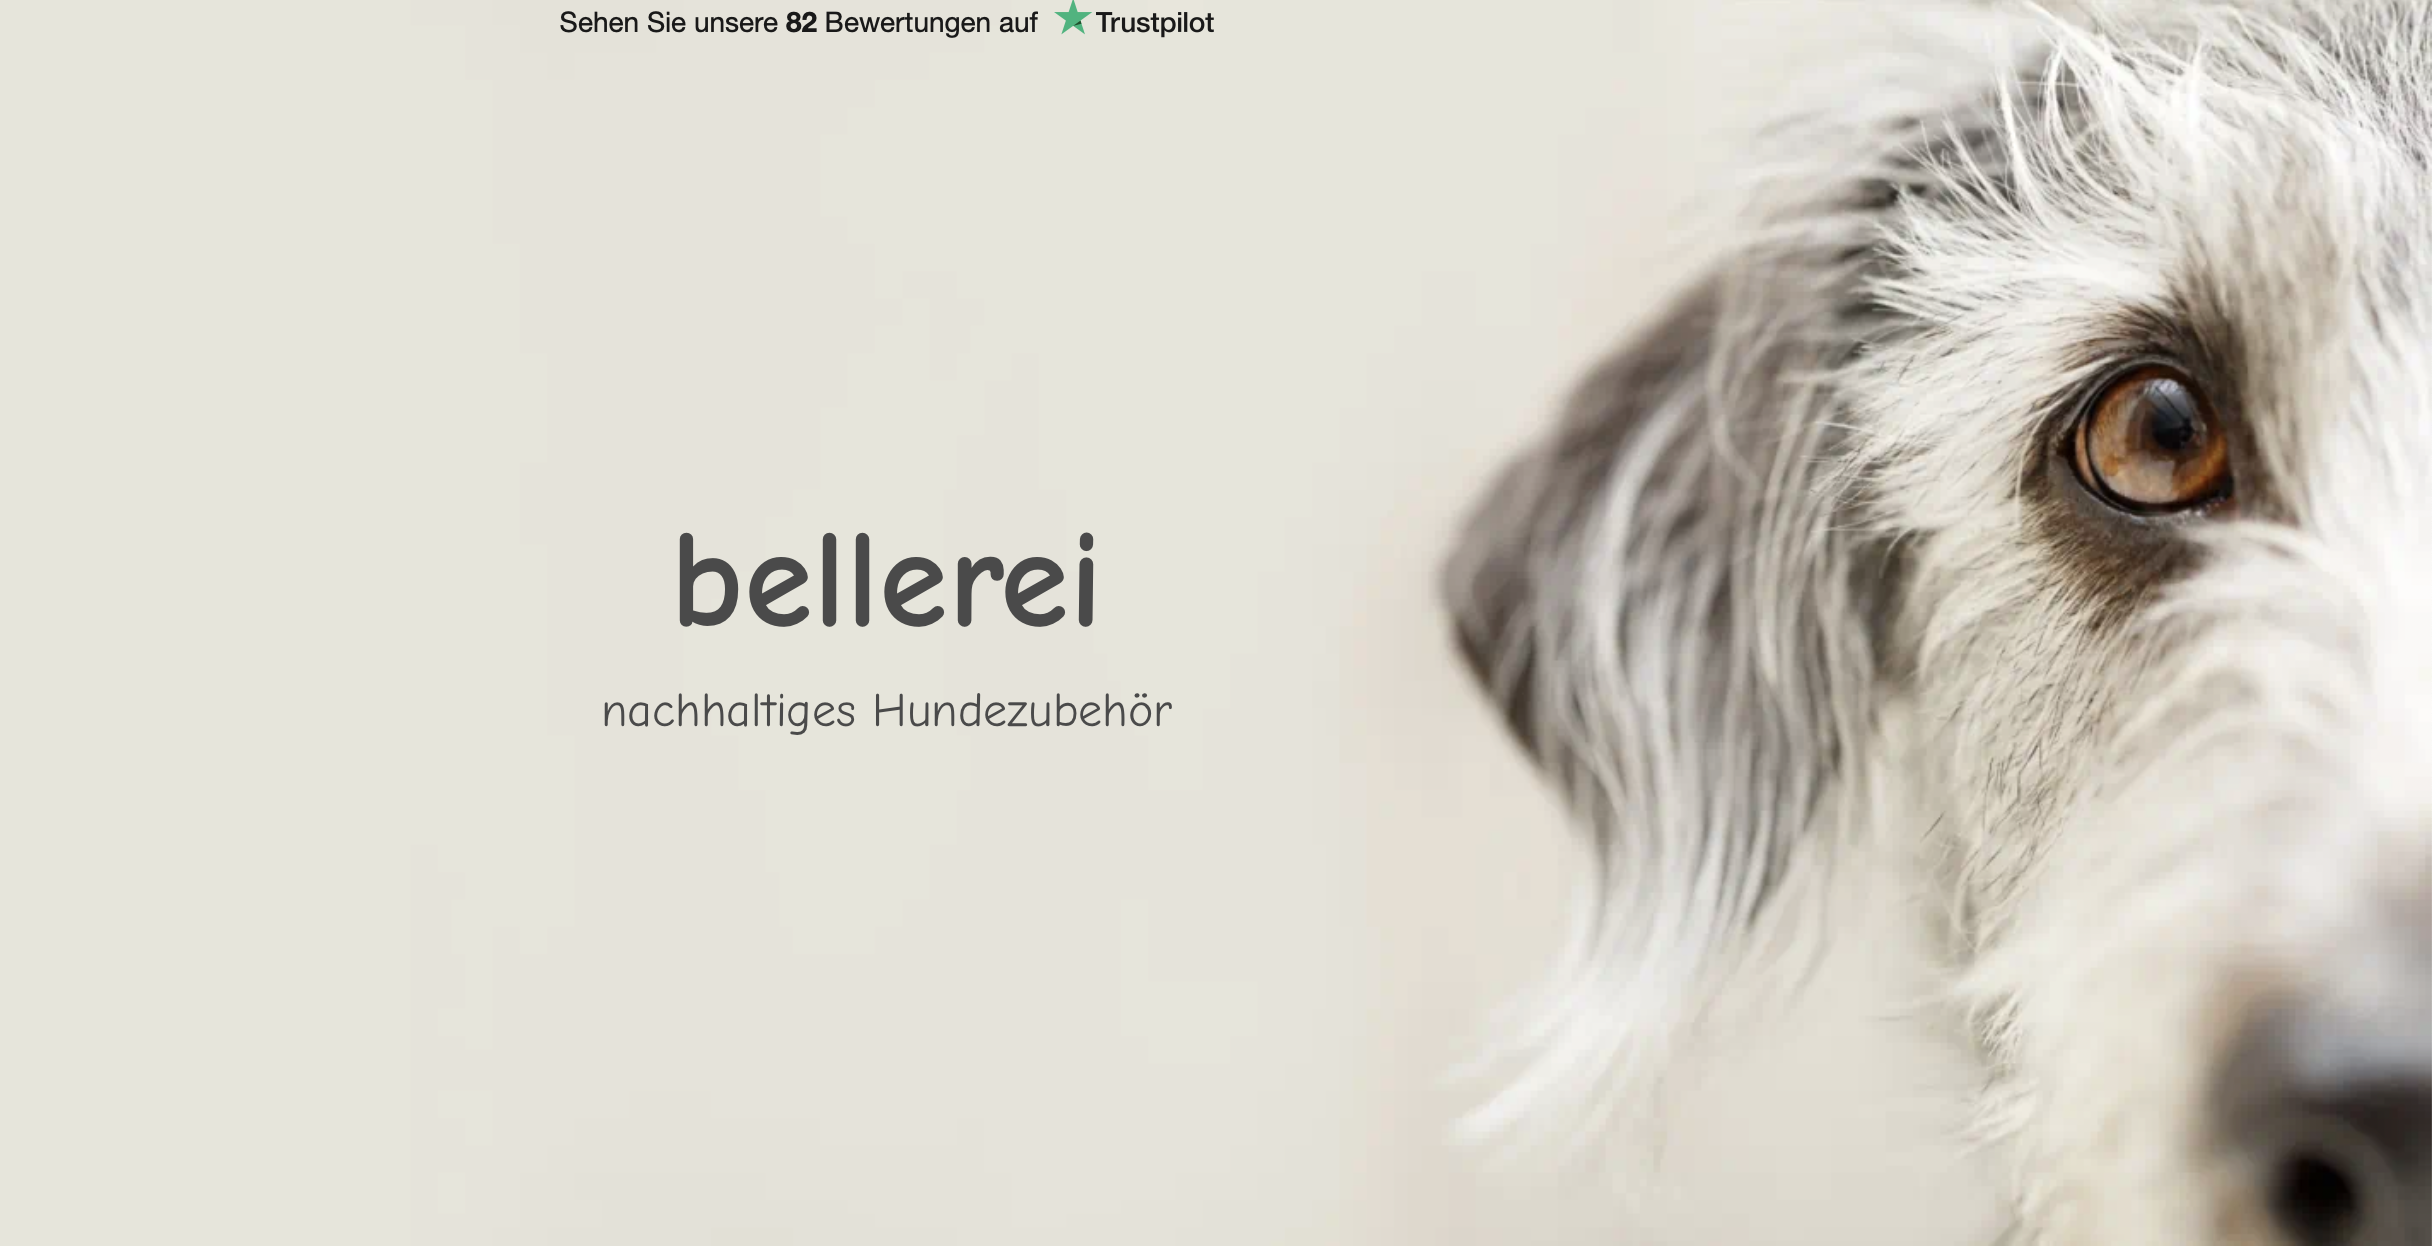 BELLEREI: Hochwertiges Hundezubehör zu fairen Preisen